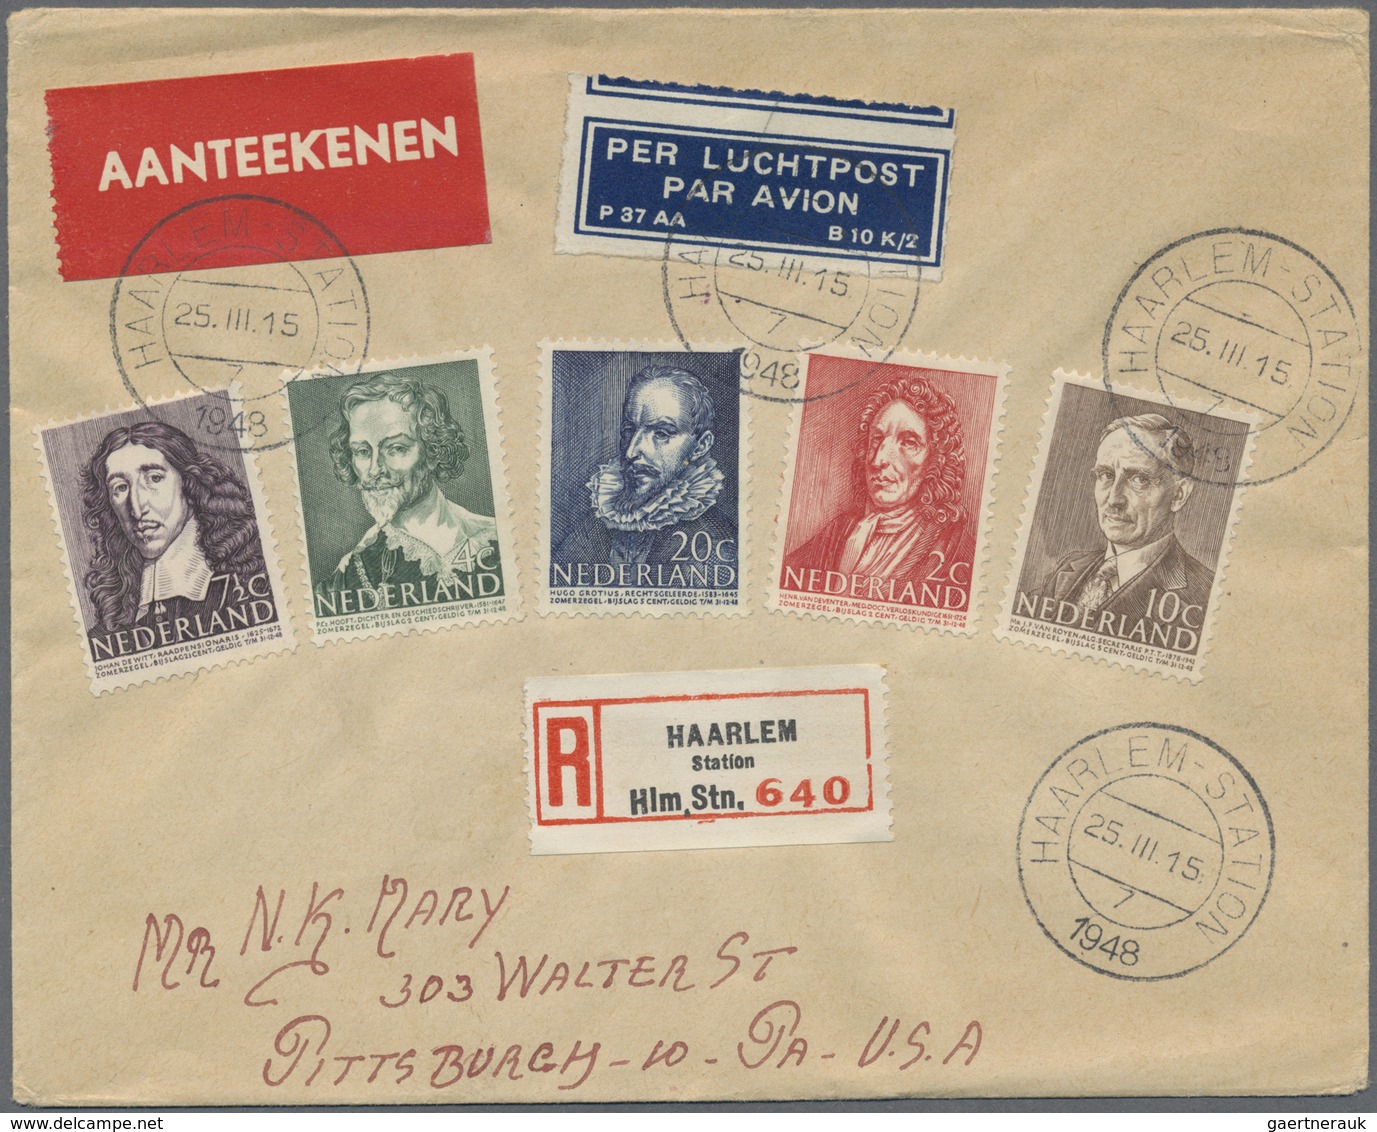 Br Niederlande: 1940/1963, Posten mit Schwerpunkt bei den Schmuck-FDC (wenig andere Post) mit ca. 200 B